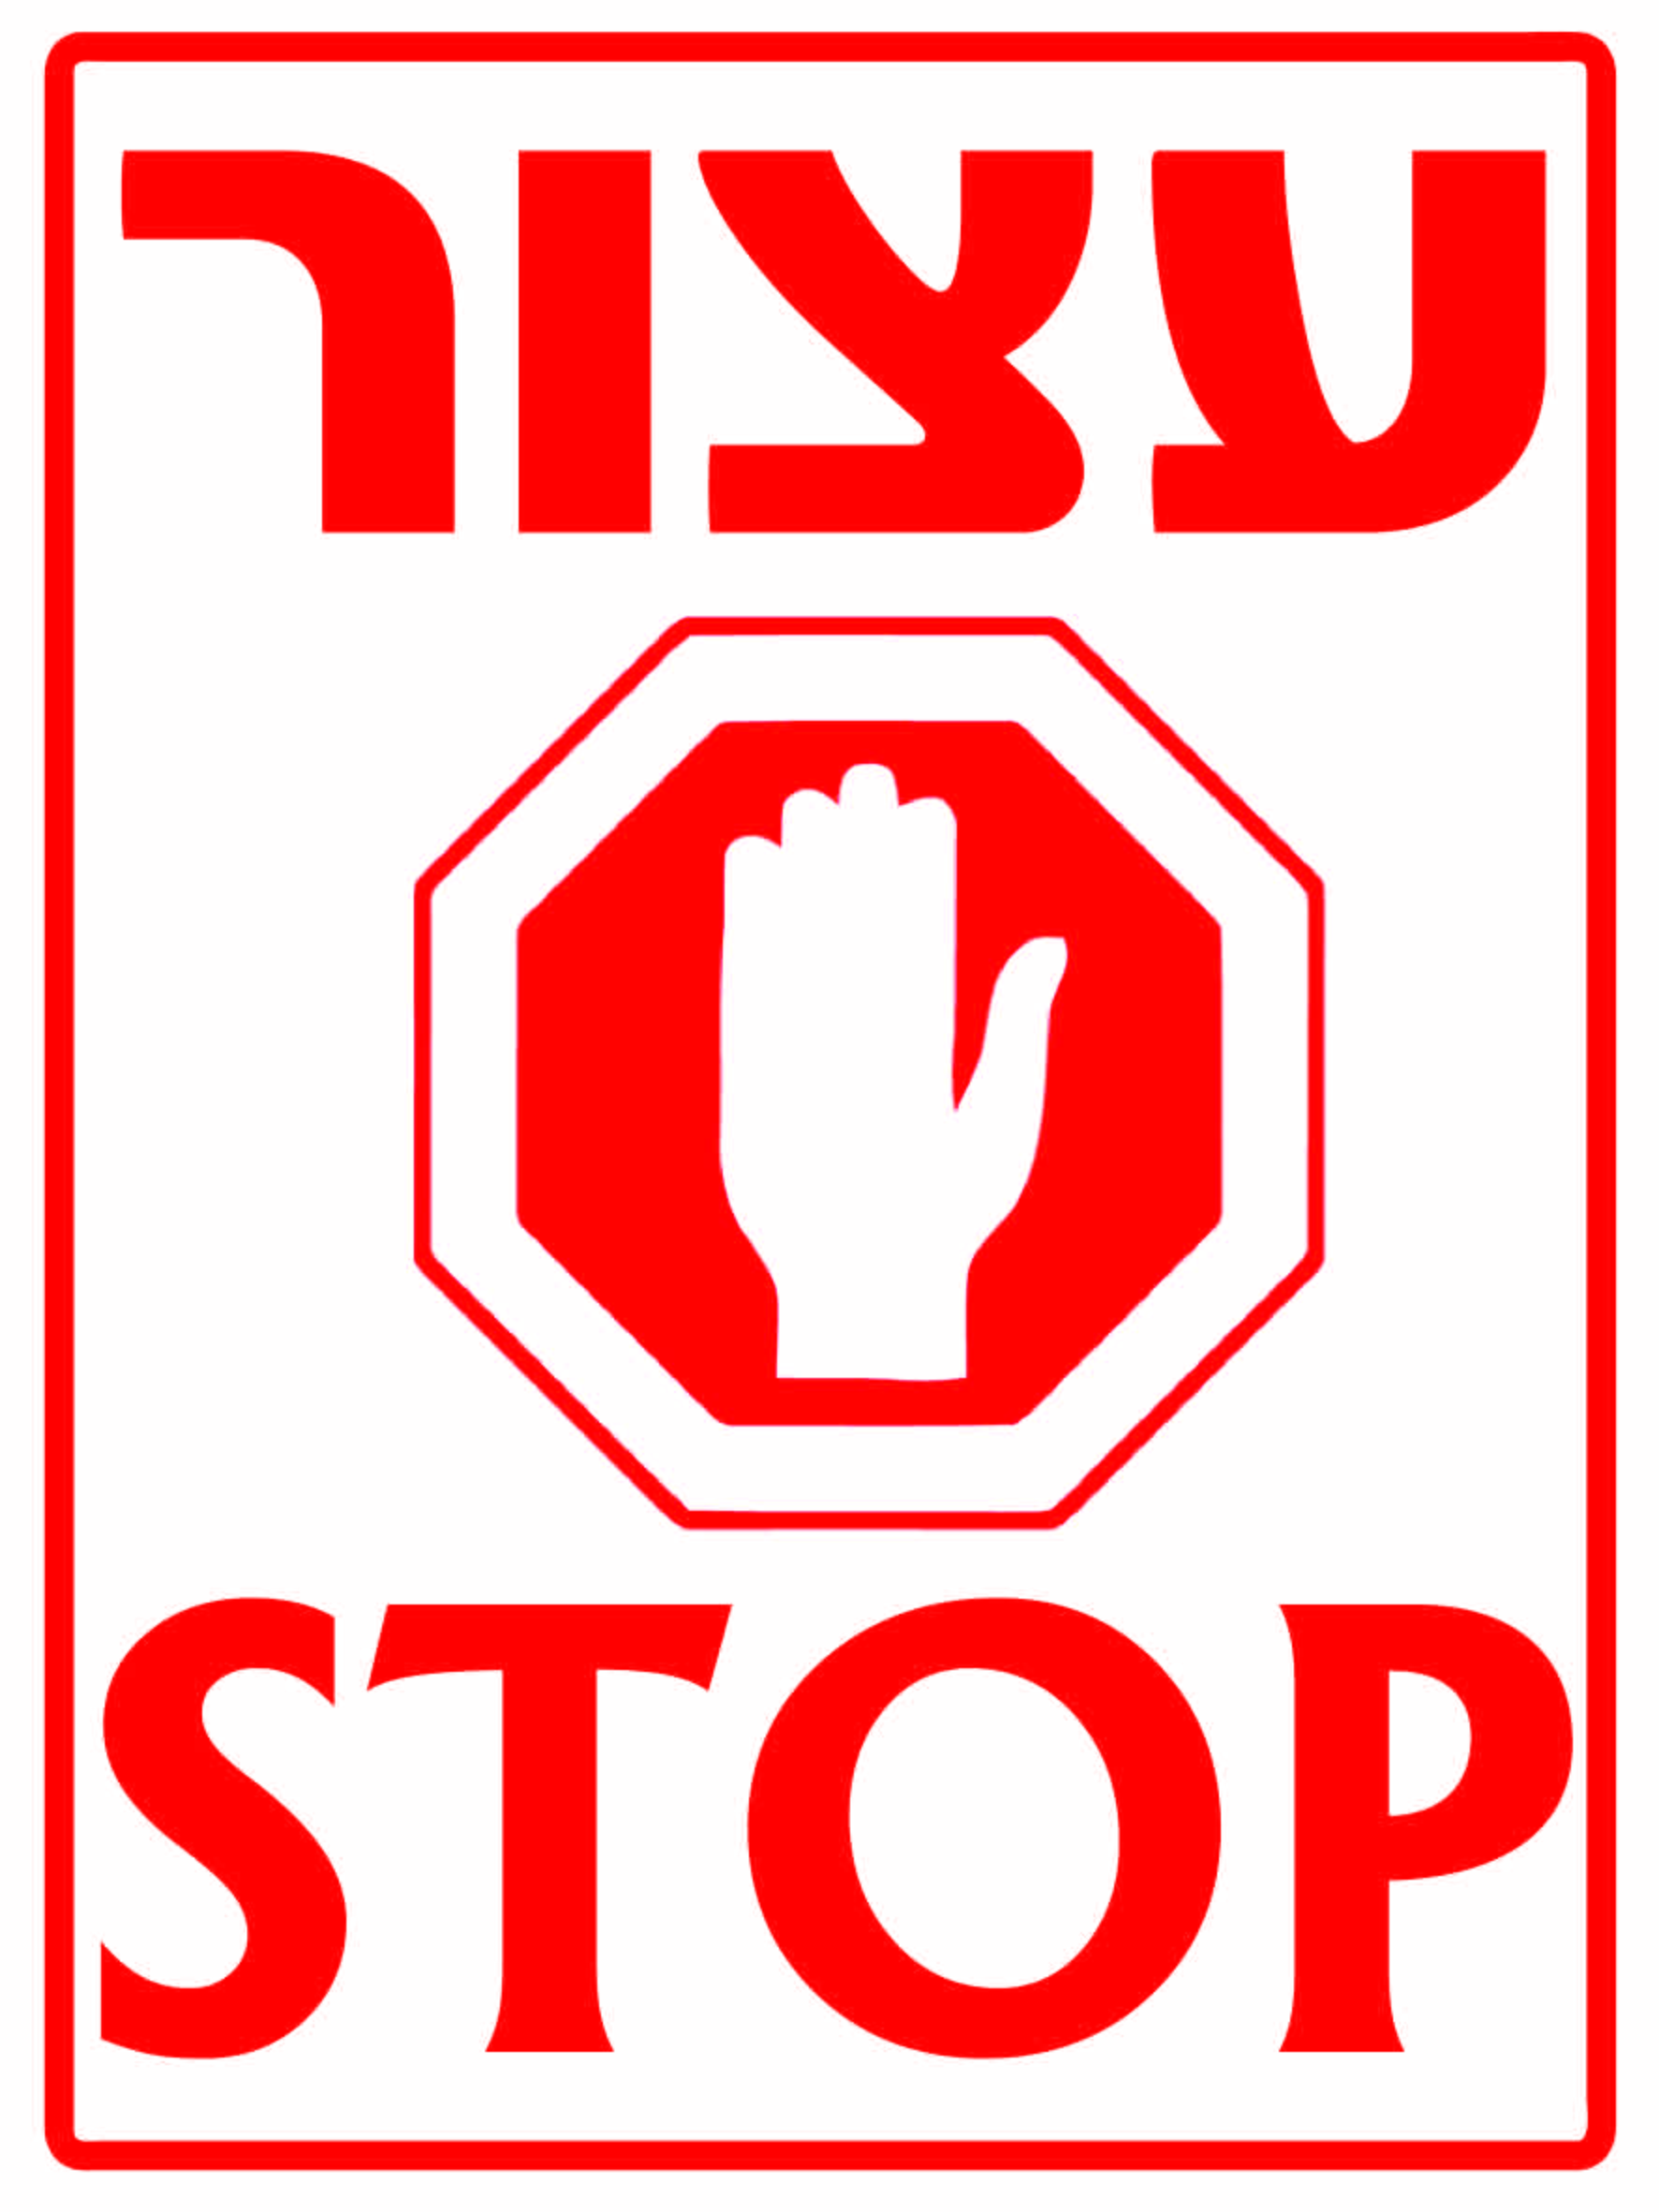 עצור STOP גדלים לפי דרישה